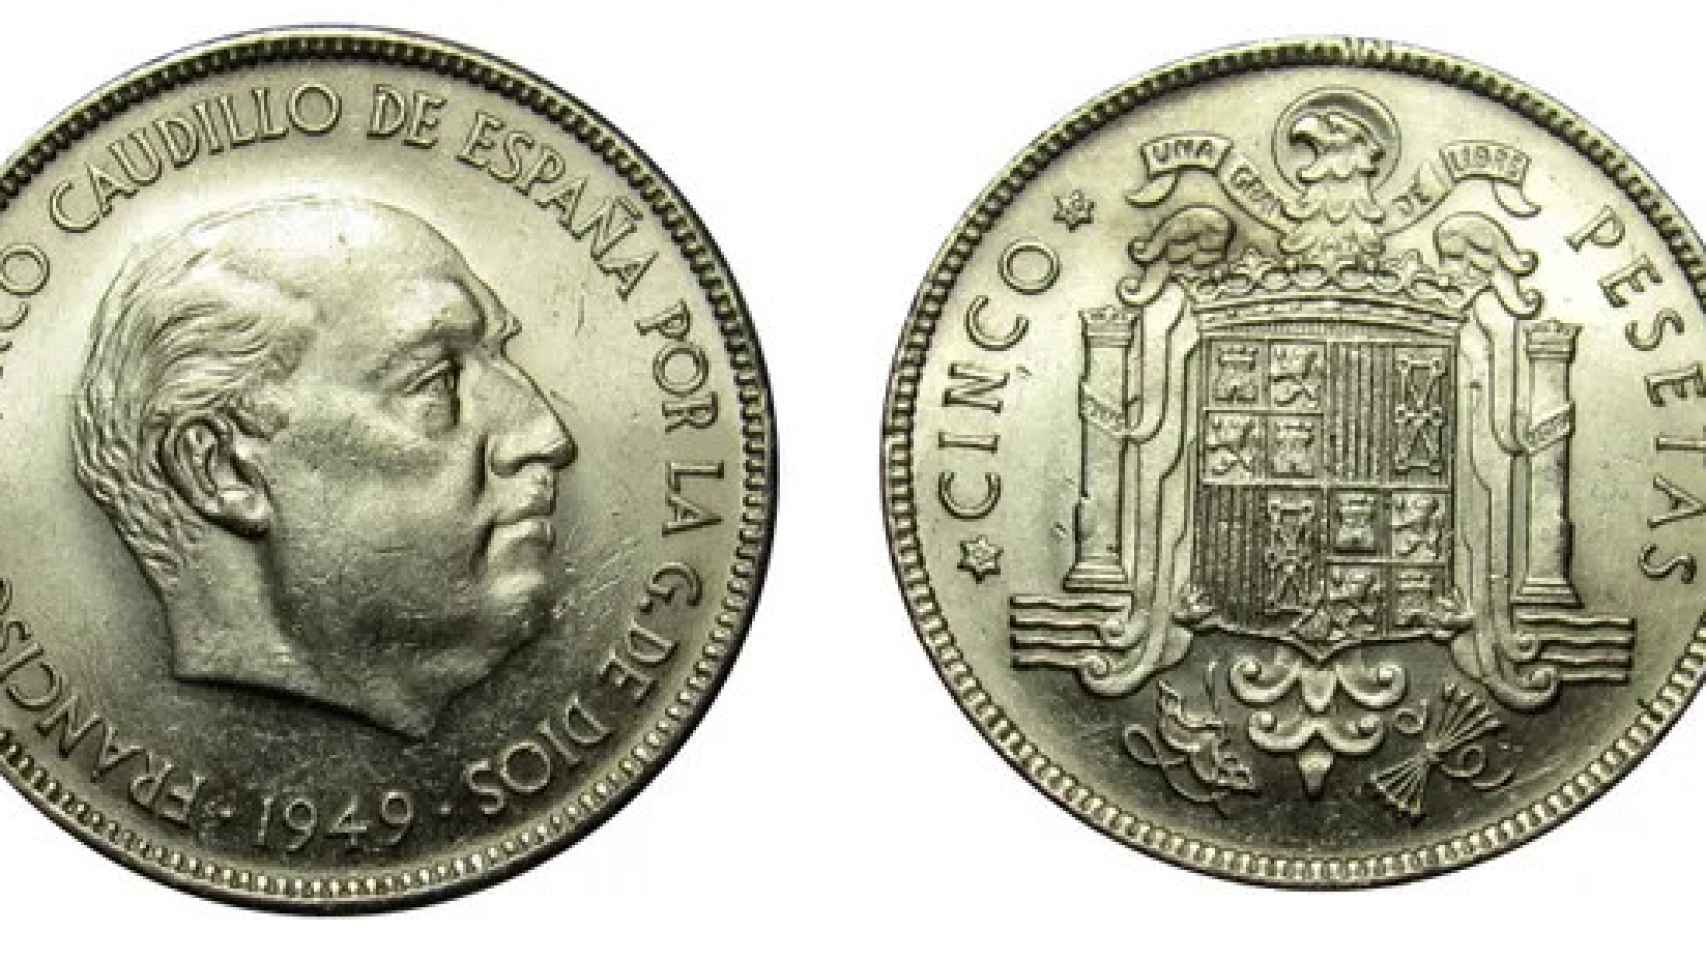 Moneda de 5 pesetas del año 1949